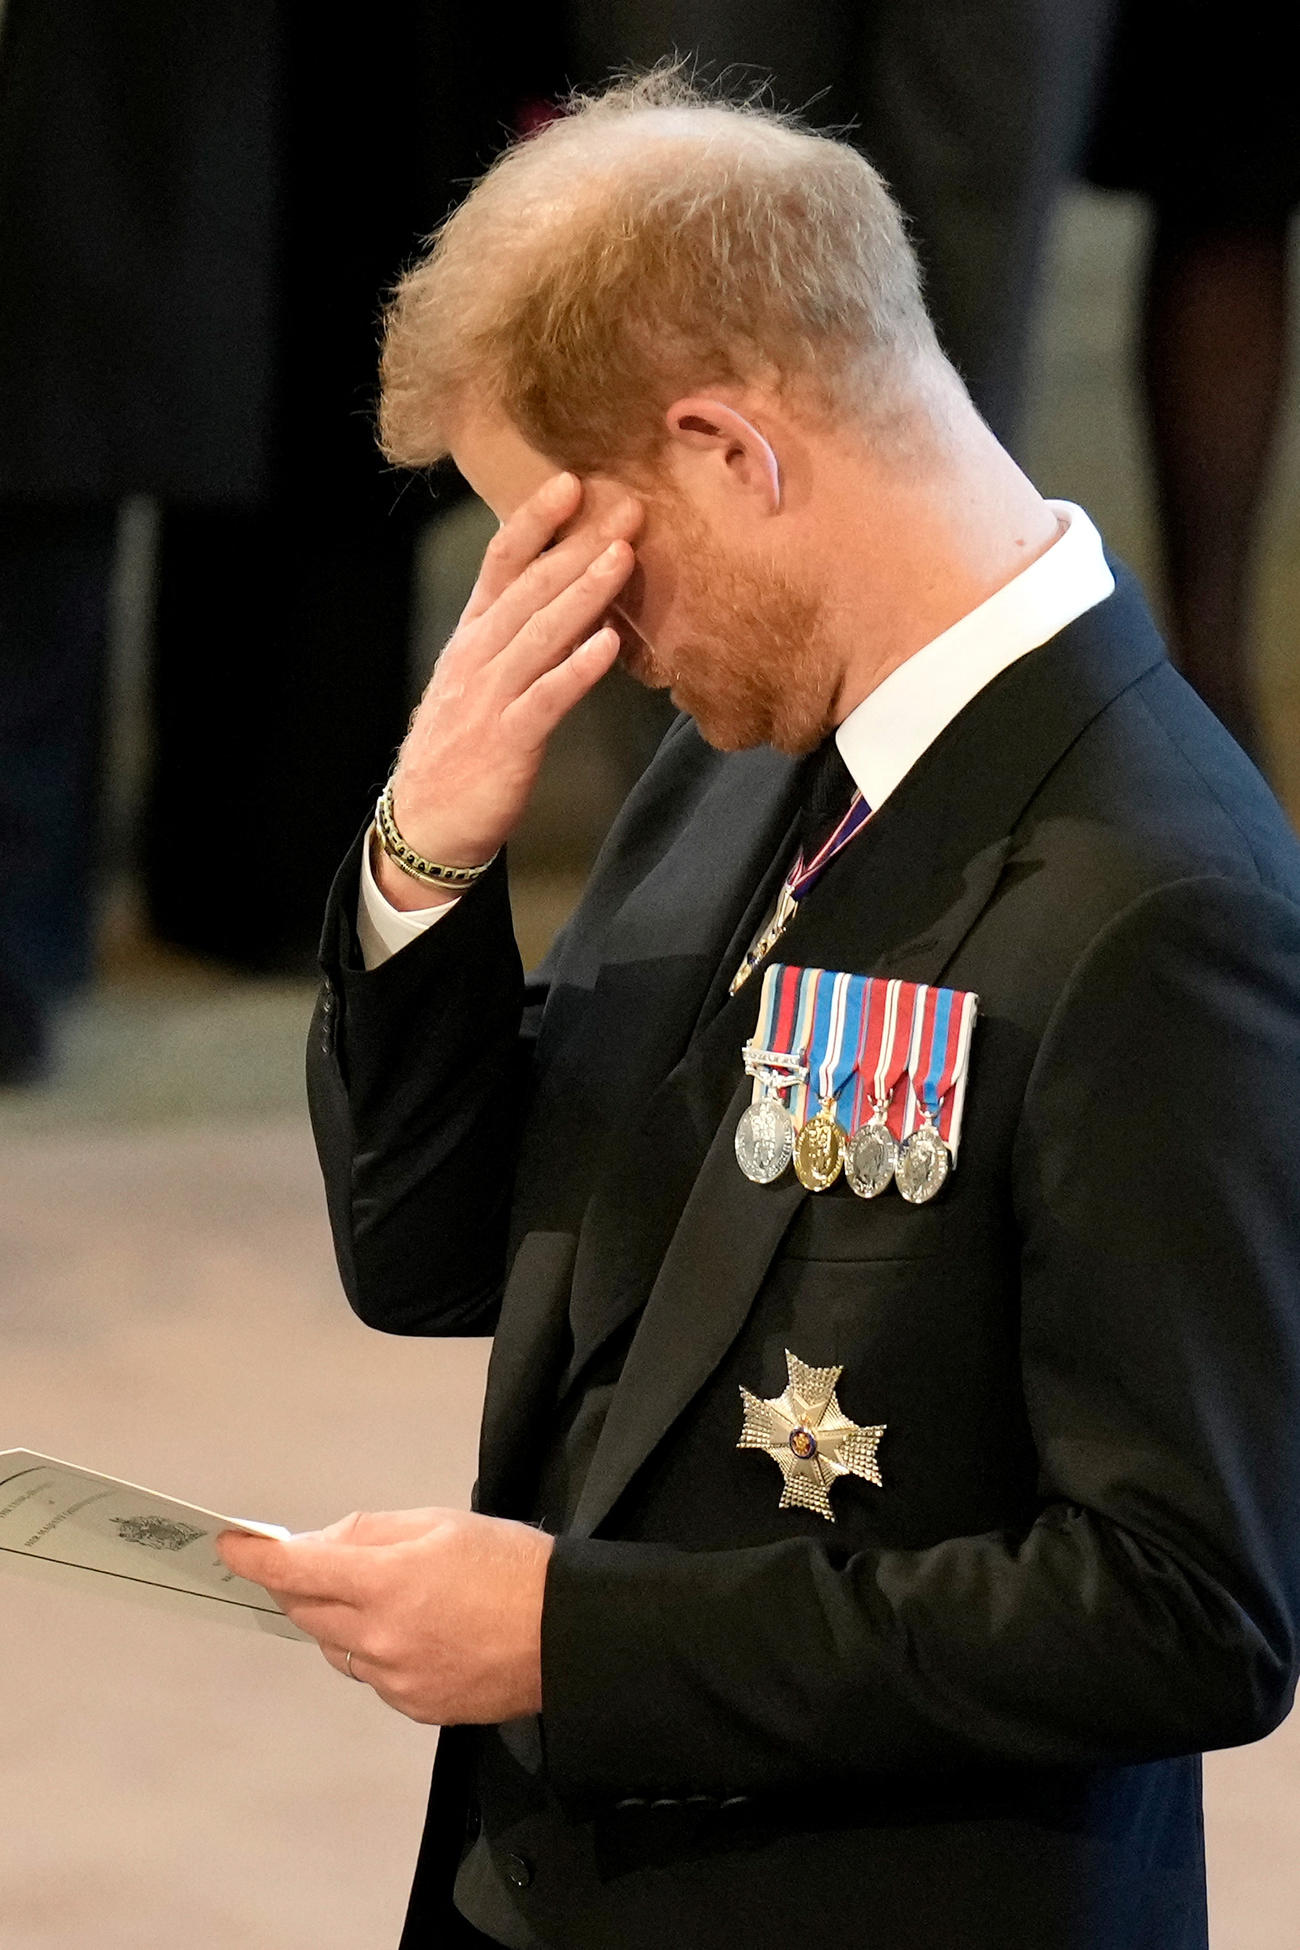 22年9月14日、エリザベス女王のひつぎがウェストミンスター・ホールに運ばれた際に、涙をぬぐうような仕草を見せたヘンリー王子（ロイター）